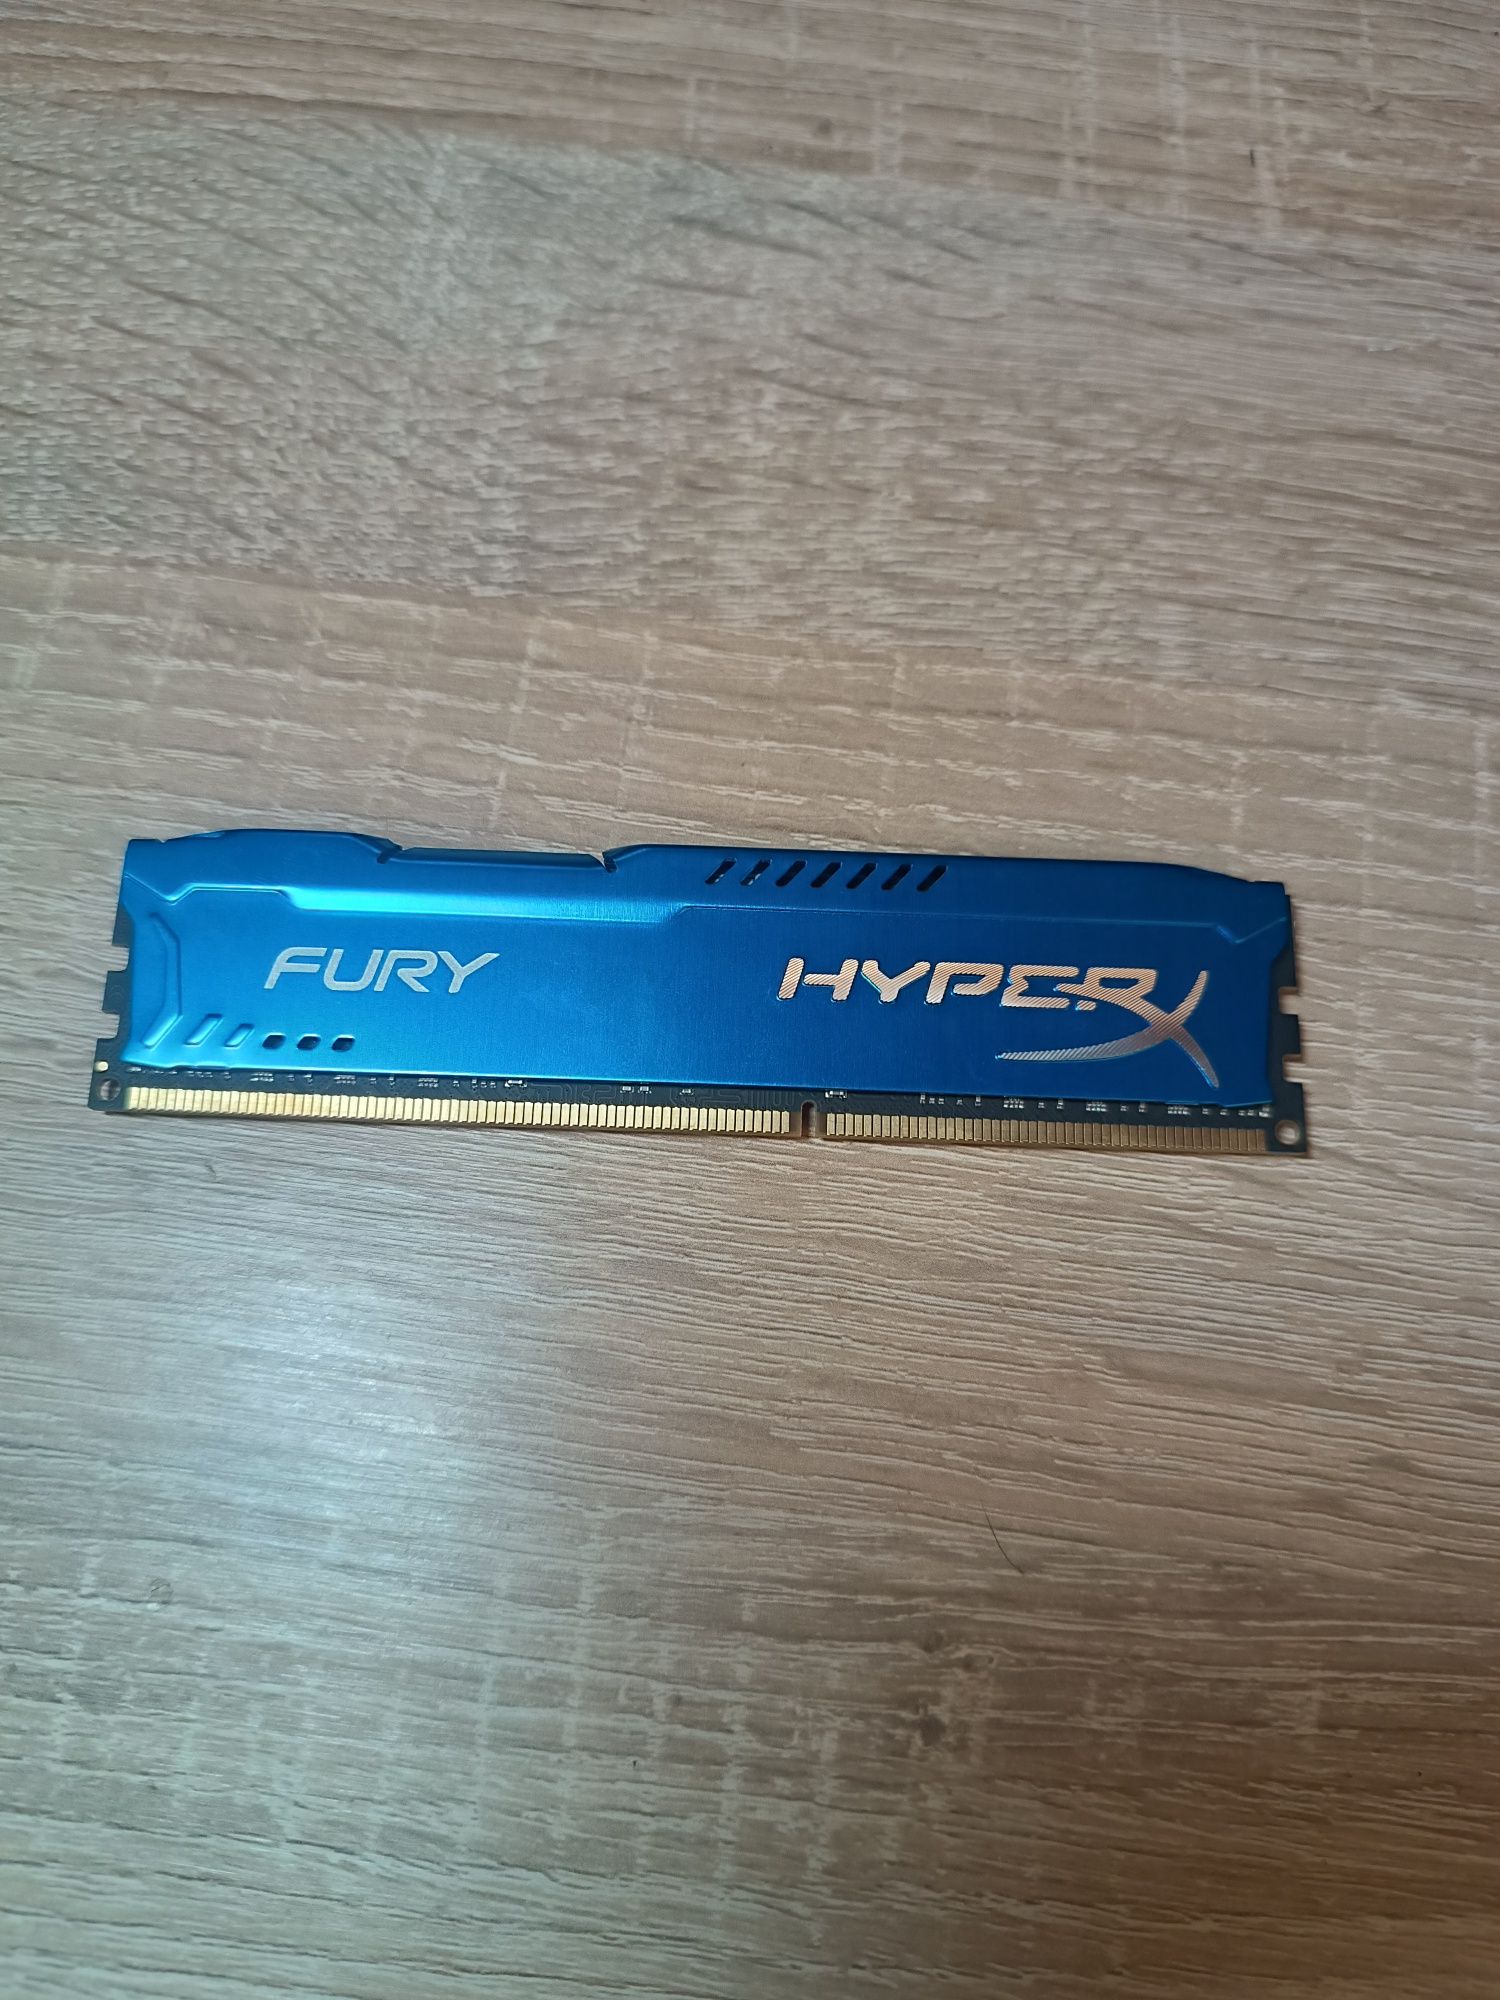 HyperX Fury DDR3-1600 8GB